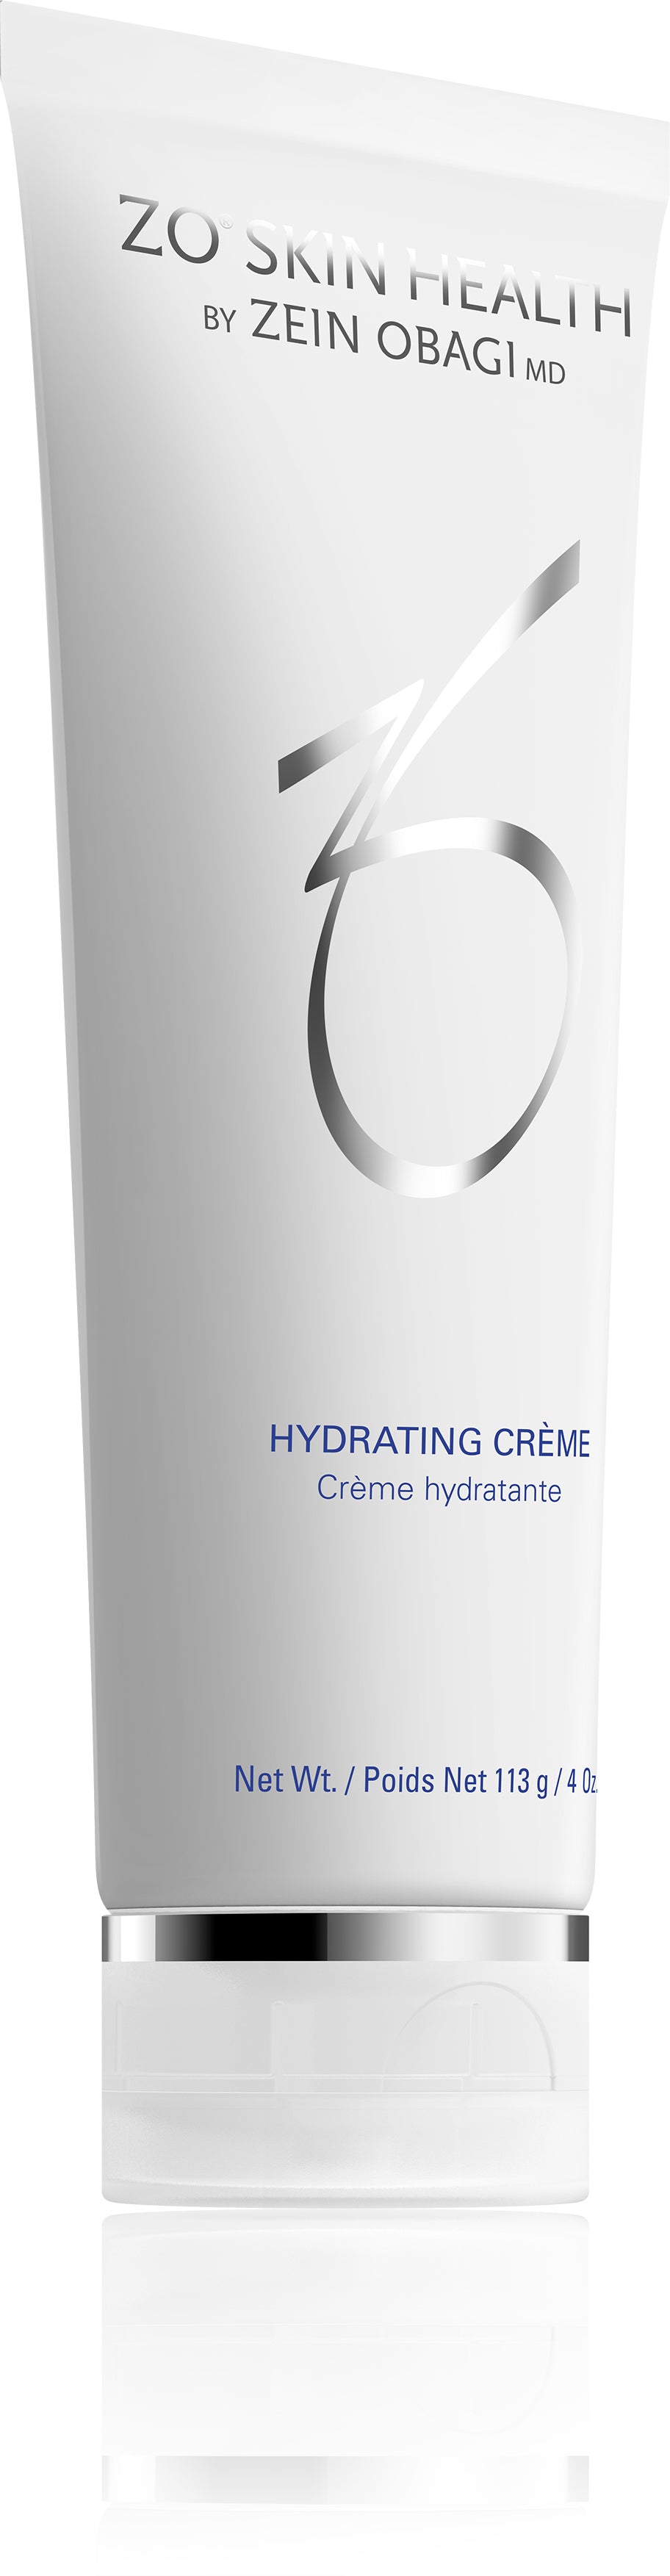 Hydrating Crème